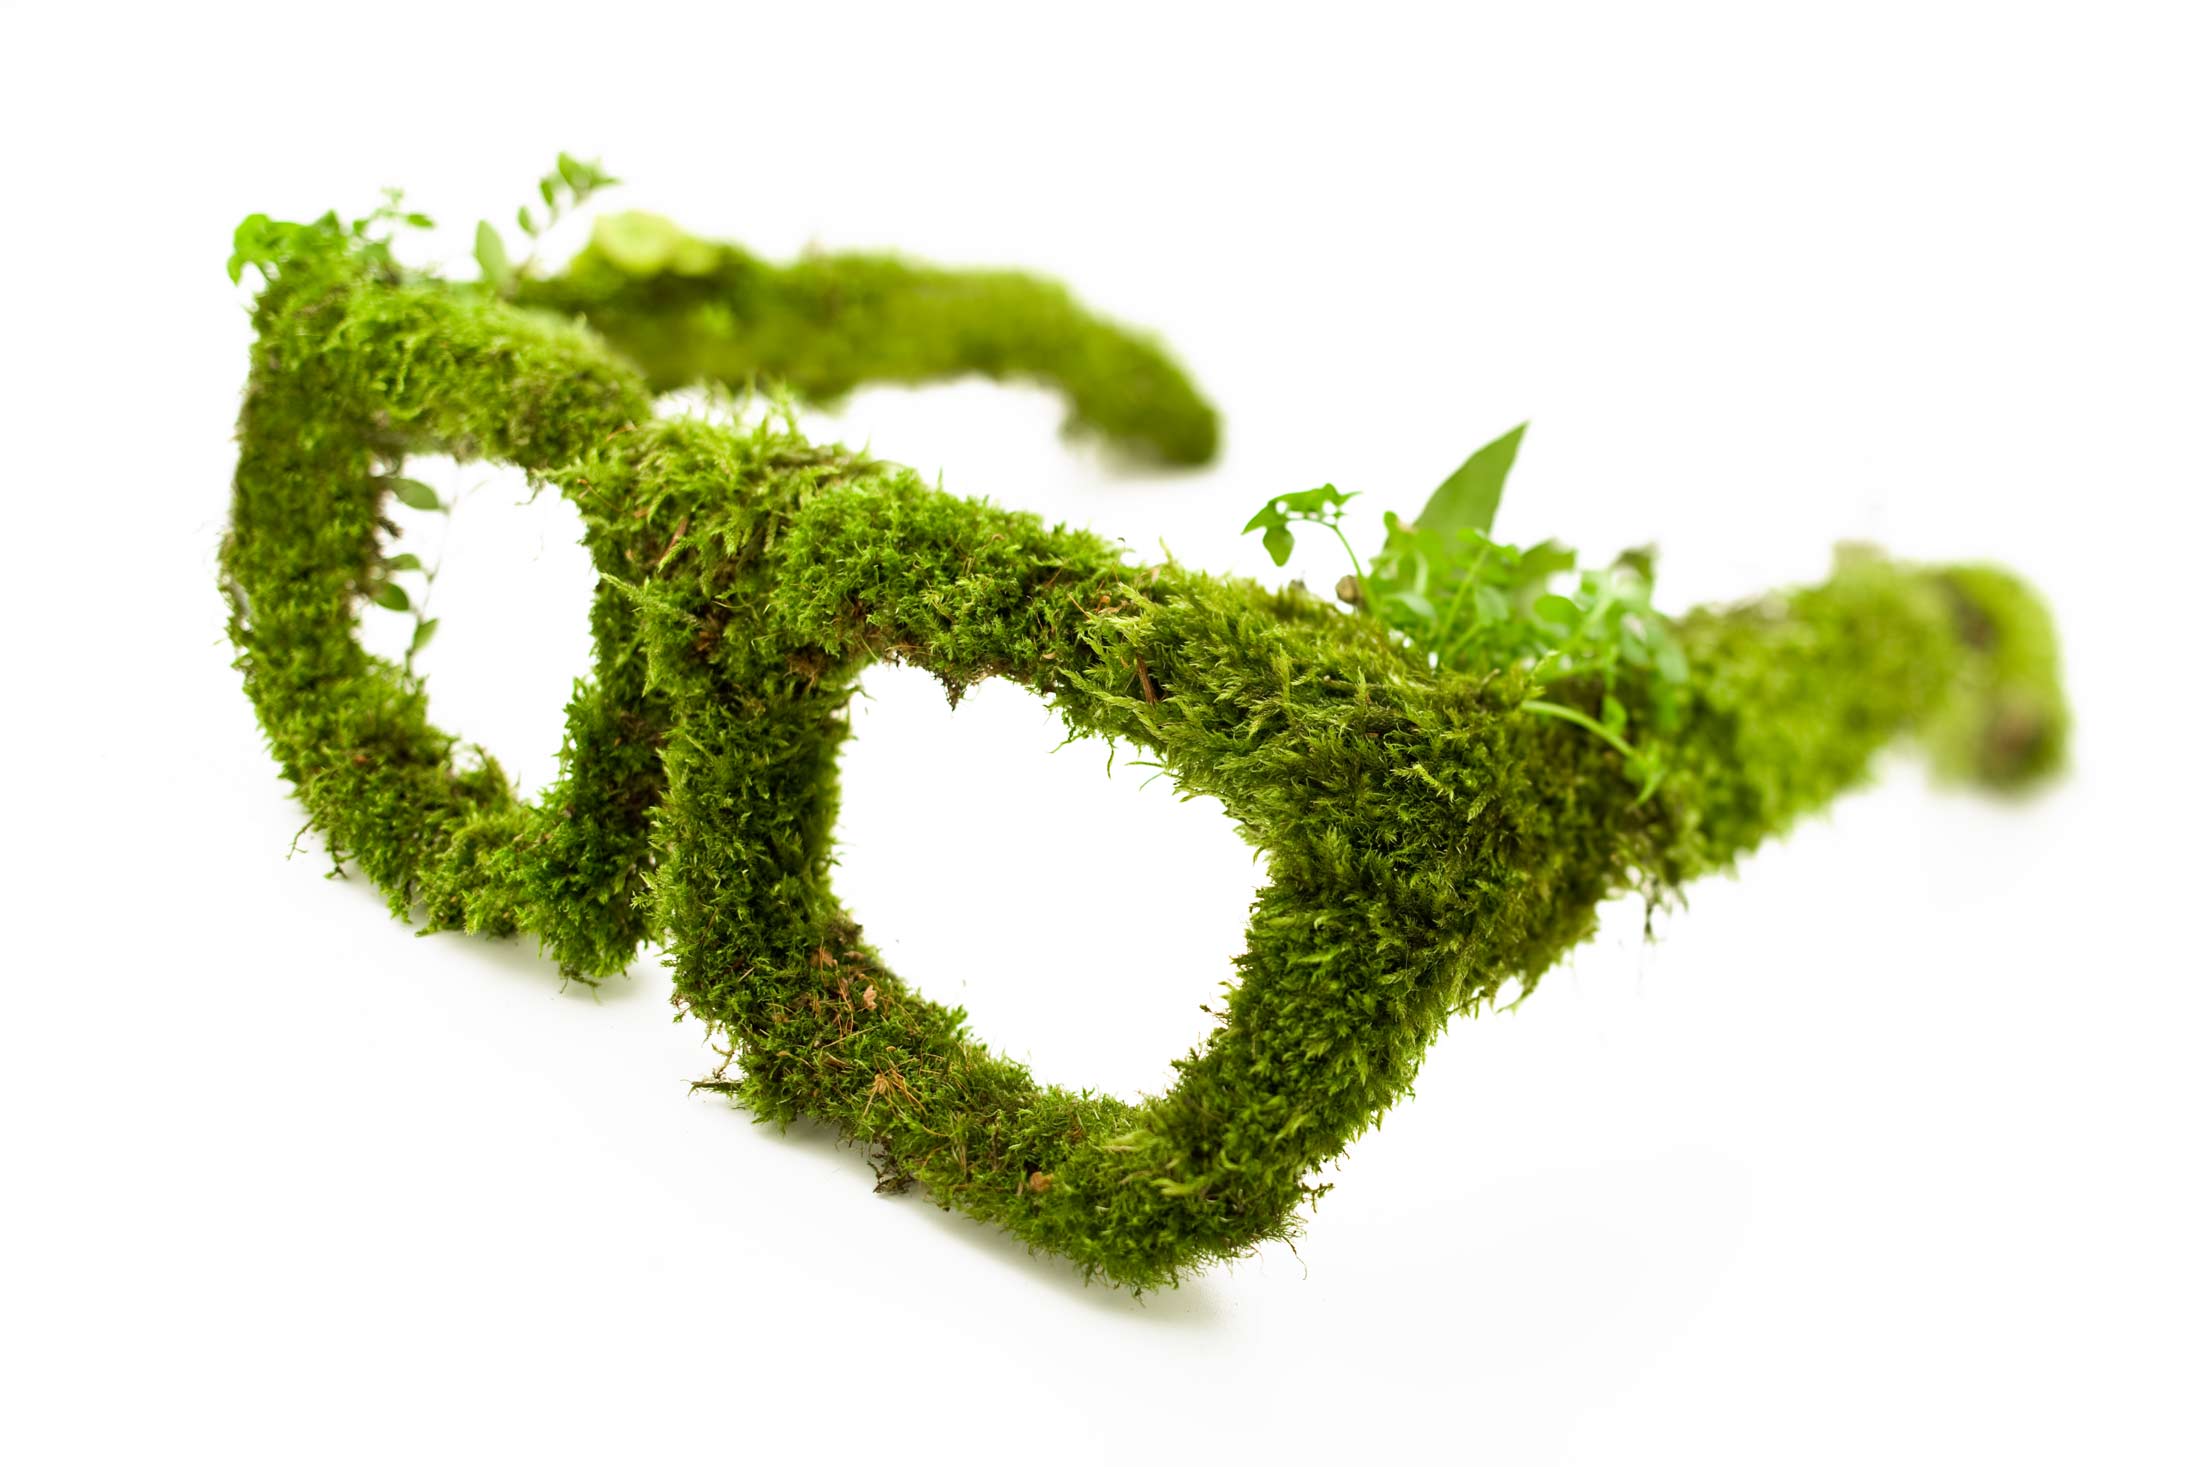 Lunettes végétales "Une vision plus verte pour l'avenir"